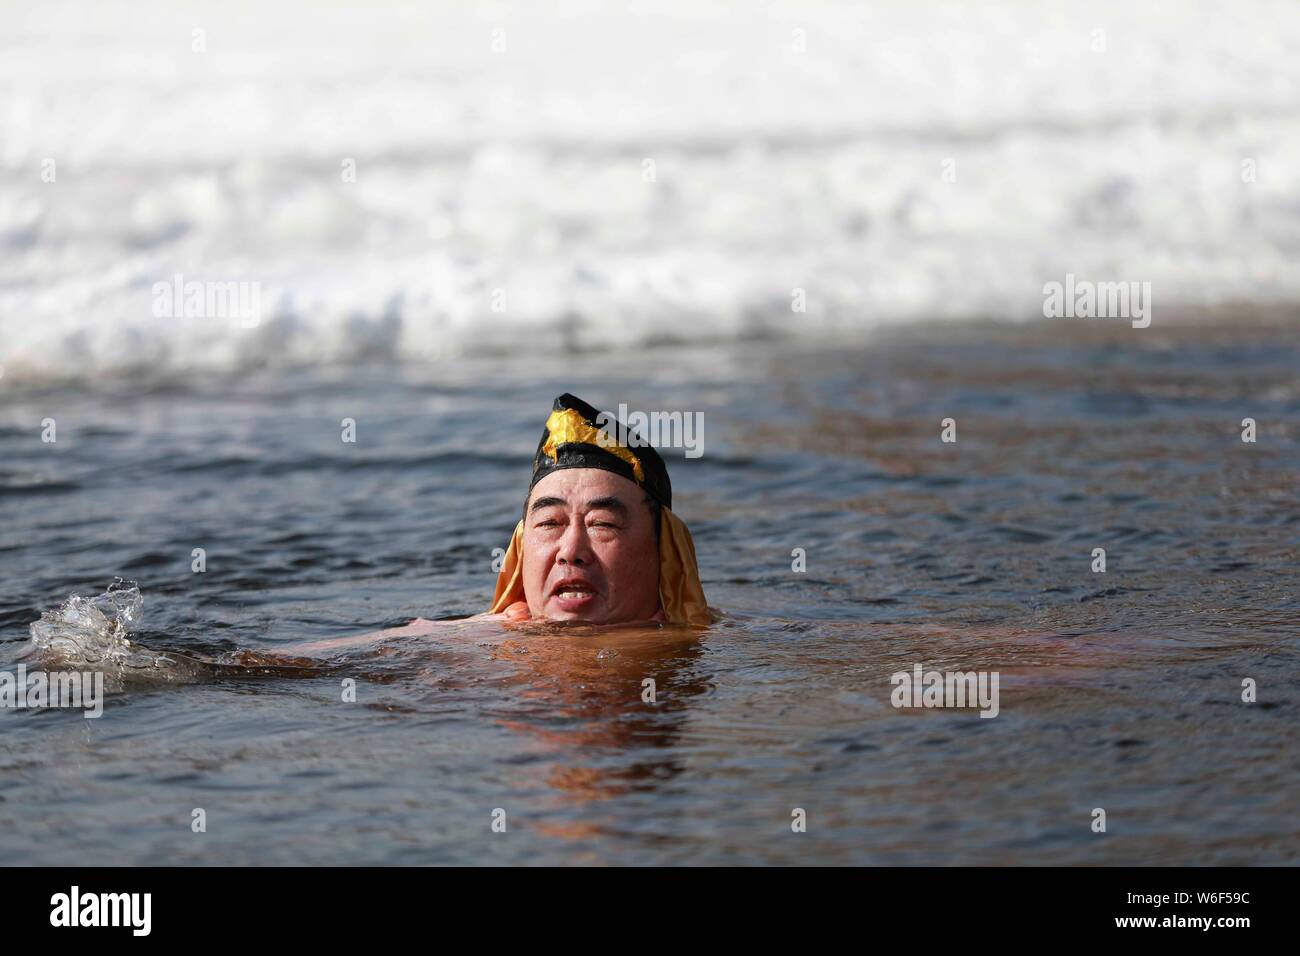 Eine chinesische Winter schwimmen Enthusiasten in das Kostüm von Zhu Bajie, einem wichtigen Charakter des Romans die Reise nach Westen gekleidet, führt lustig Tauchen in Stockfoto